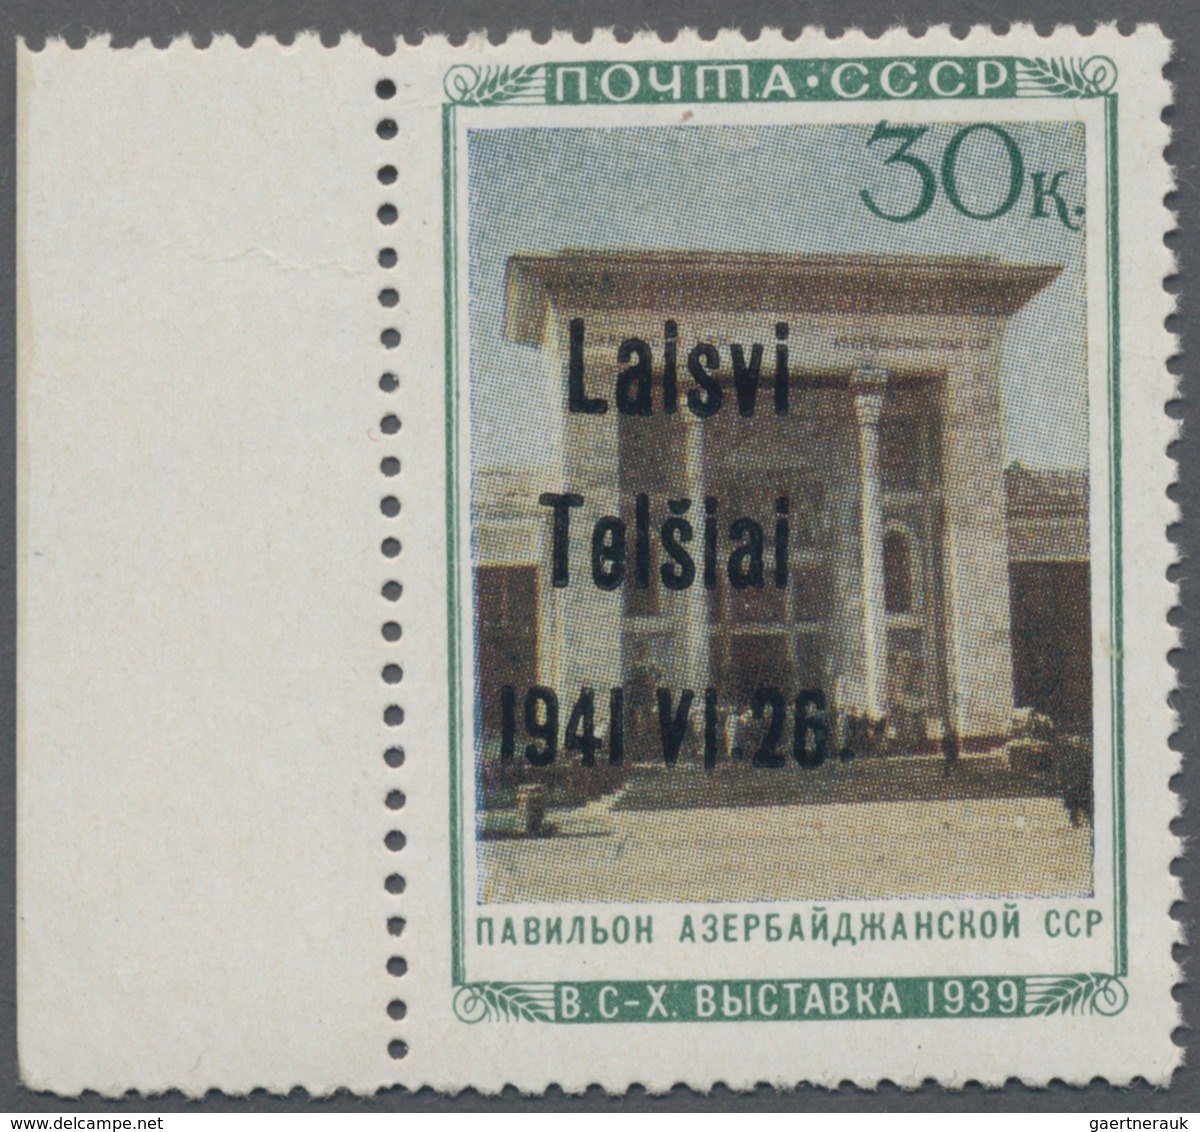 Dt. Besetzung II WK - Litauen - Telschen (Telsiai): 1941, 30 Kop. Landwirtschaftsausstellung Mit Auf - Bezetting 1938-45